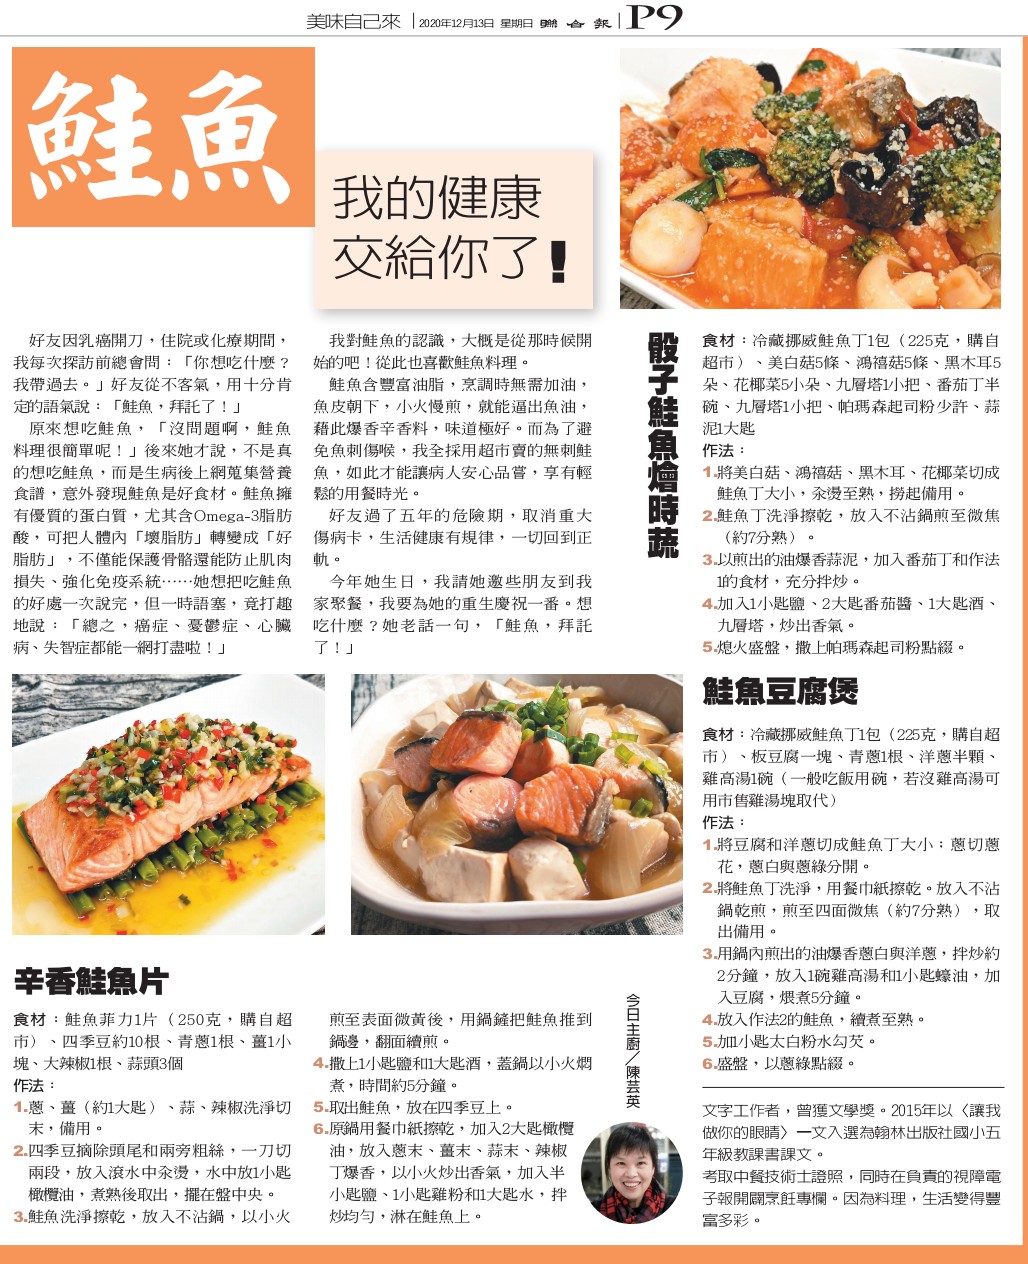 聯合報週日推出的「元氣週報」，介紹了三道我做的「鮭魚料理」。